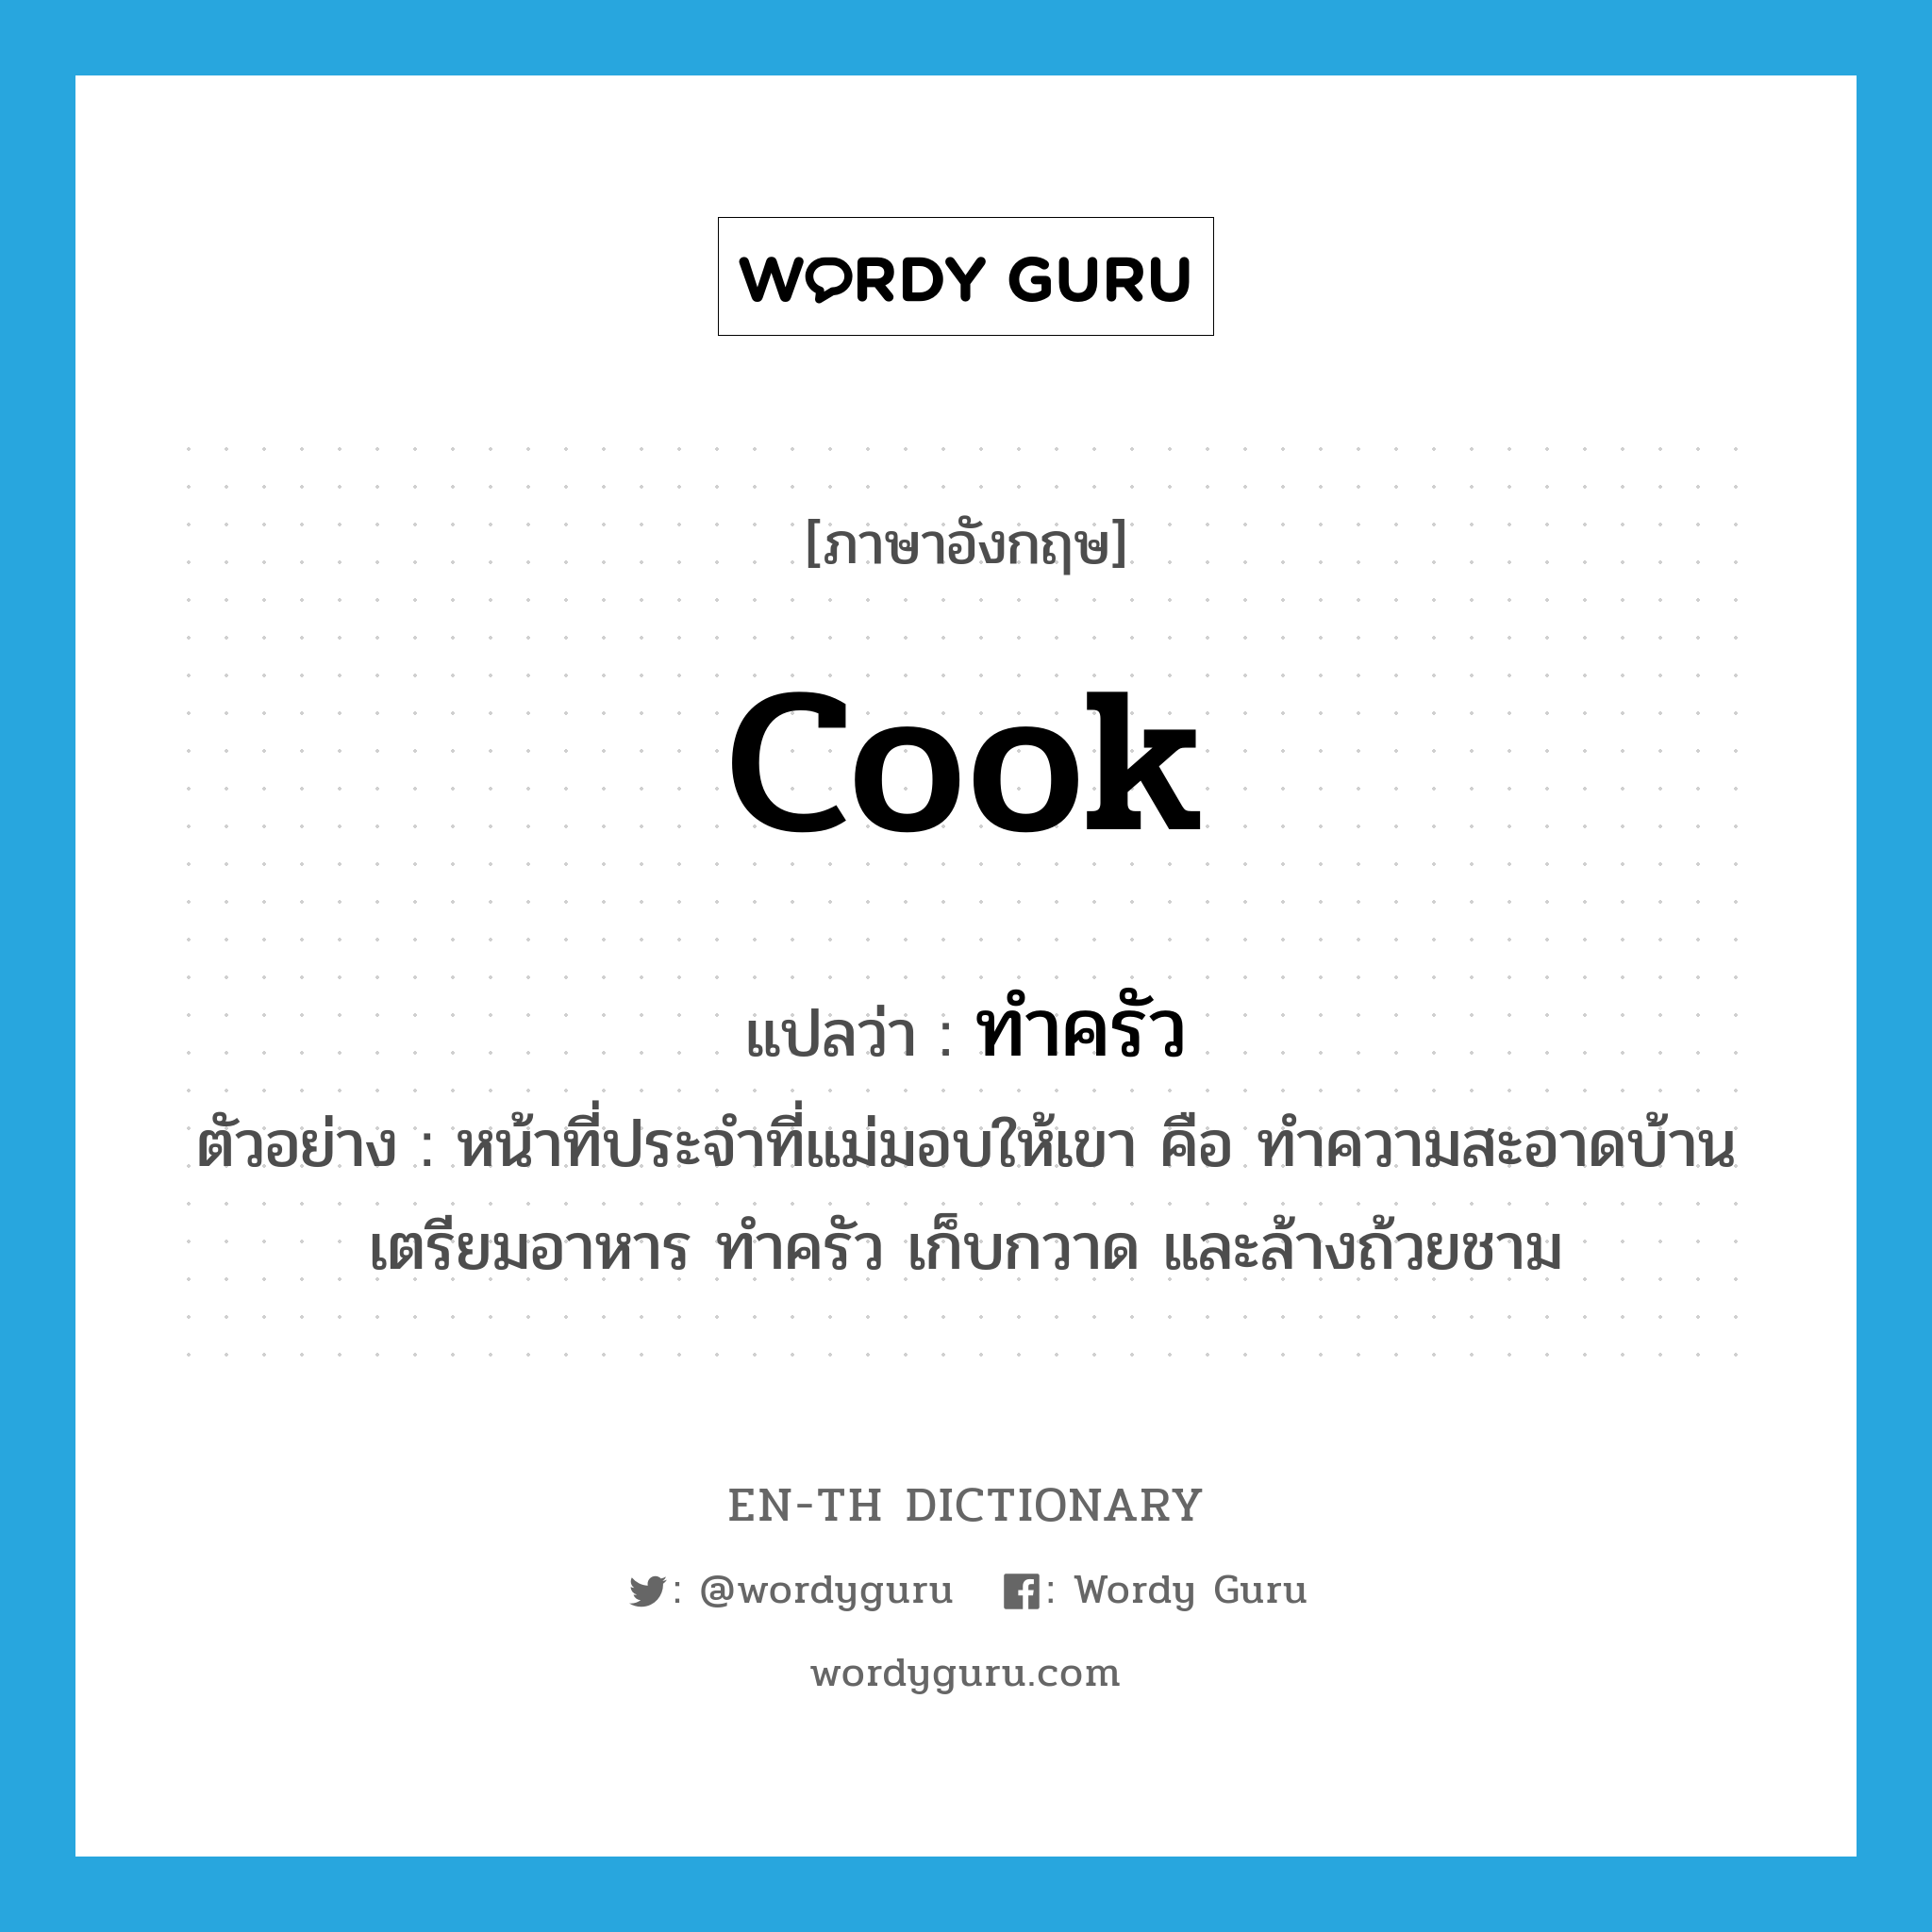 cook แปลว่า?, คำศัพท์ภาษาอังกฤษ cook แปลว่า ทำครัว ประเภท V ตัวอย่าง หน้าที่ประจำที่แม่มอบให้เขา คือ ทำความสะอาดบ้าน เตรียมอาหาร ทำครัว เก็บกวาด และล้างถ้วยชาม หมวด V